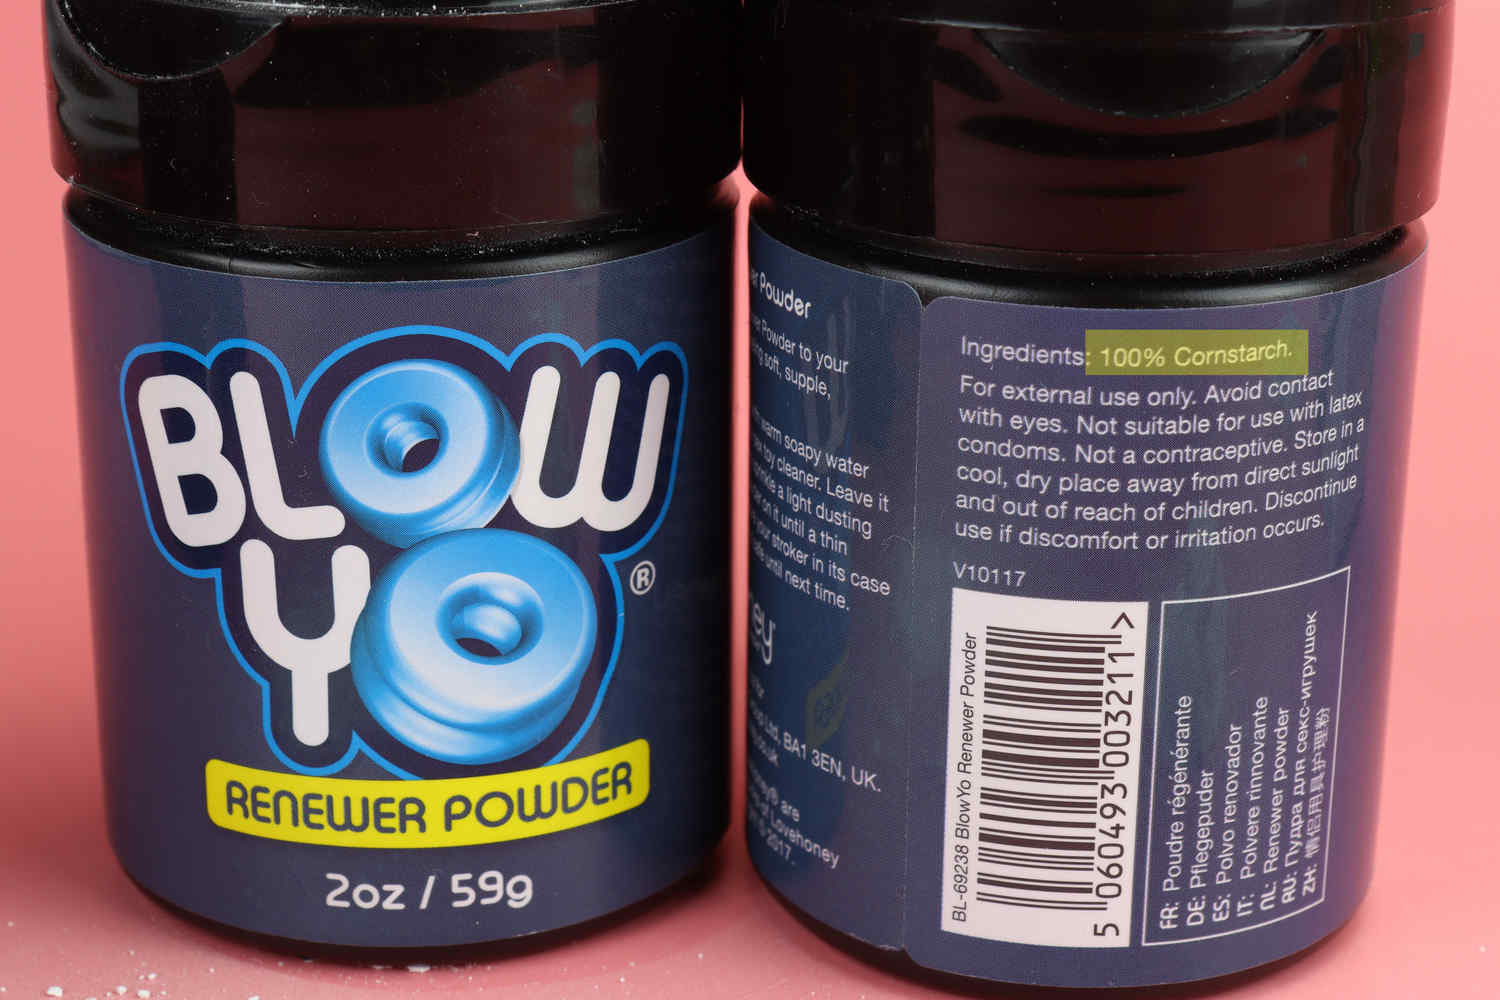 BLOW YO Renewer powder